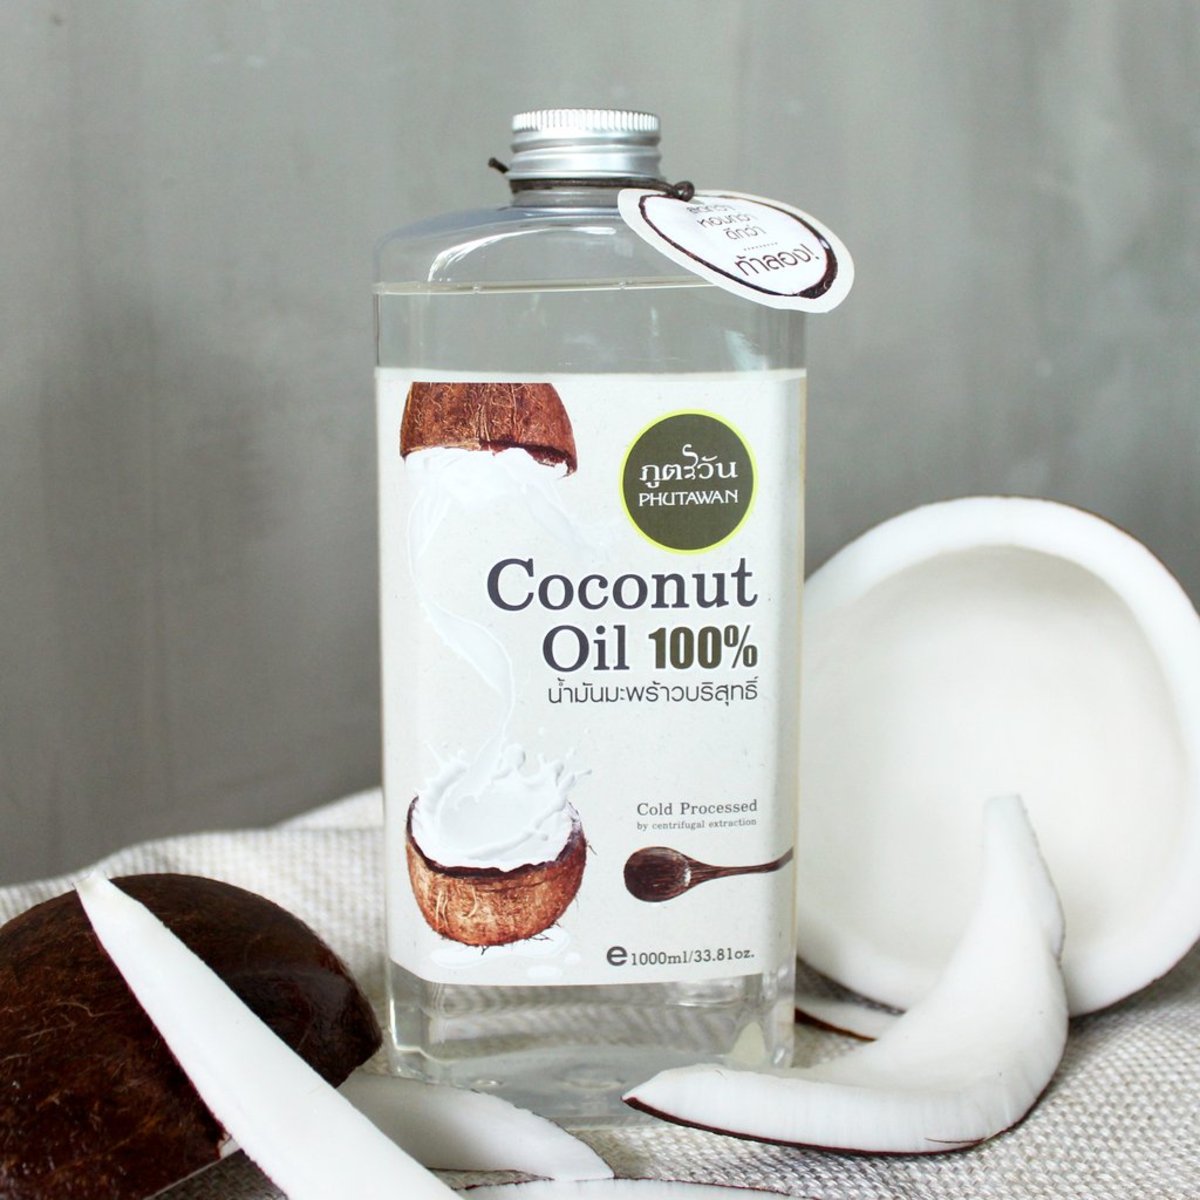 Тайское натуральное 100% органическое кокосовое масло холодного отжима Phutawan Coconut Oil 1000 мл. ТАЙСКОЕ КОКОСОВОЕ МАСЛО КУПИТЬ В МОСКВЕ